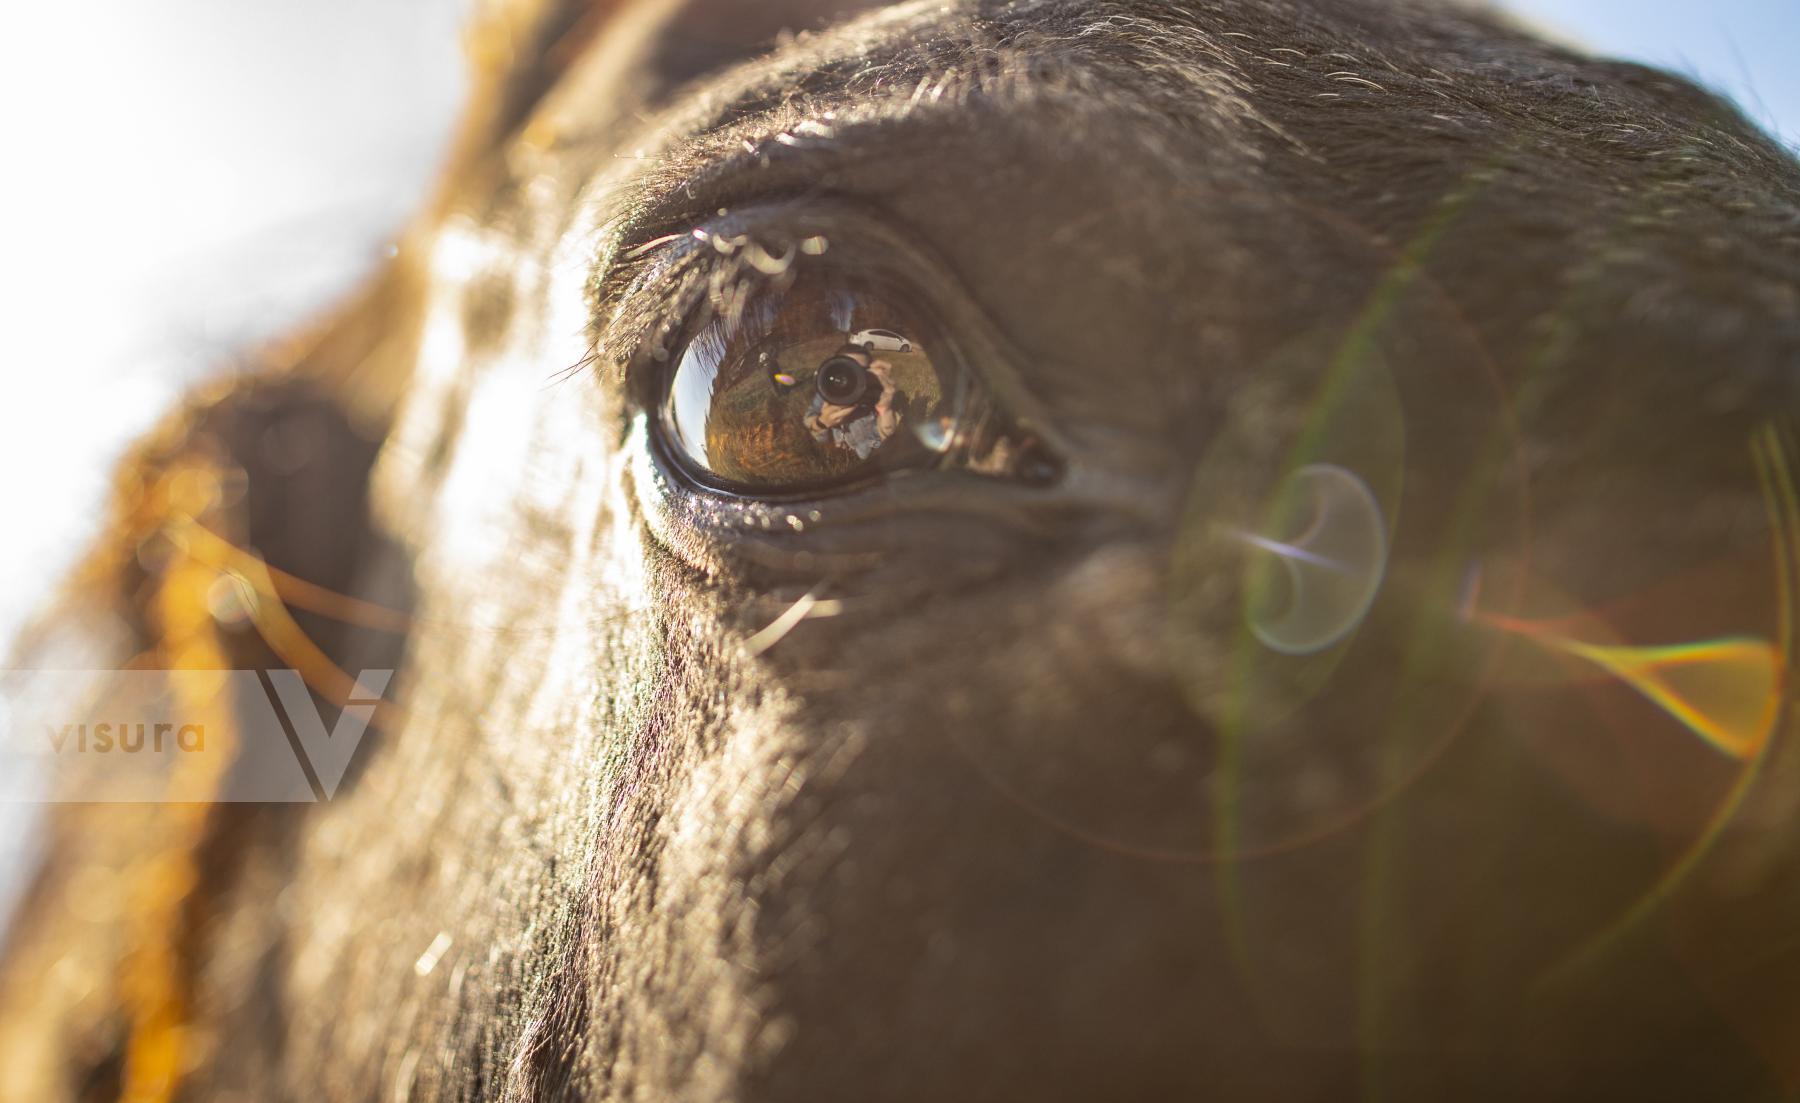 Purchase Horse Eye by Austin Anthony